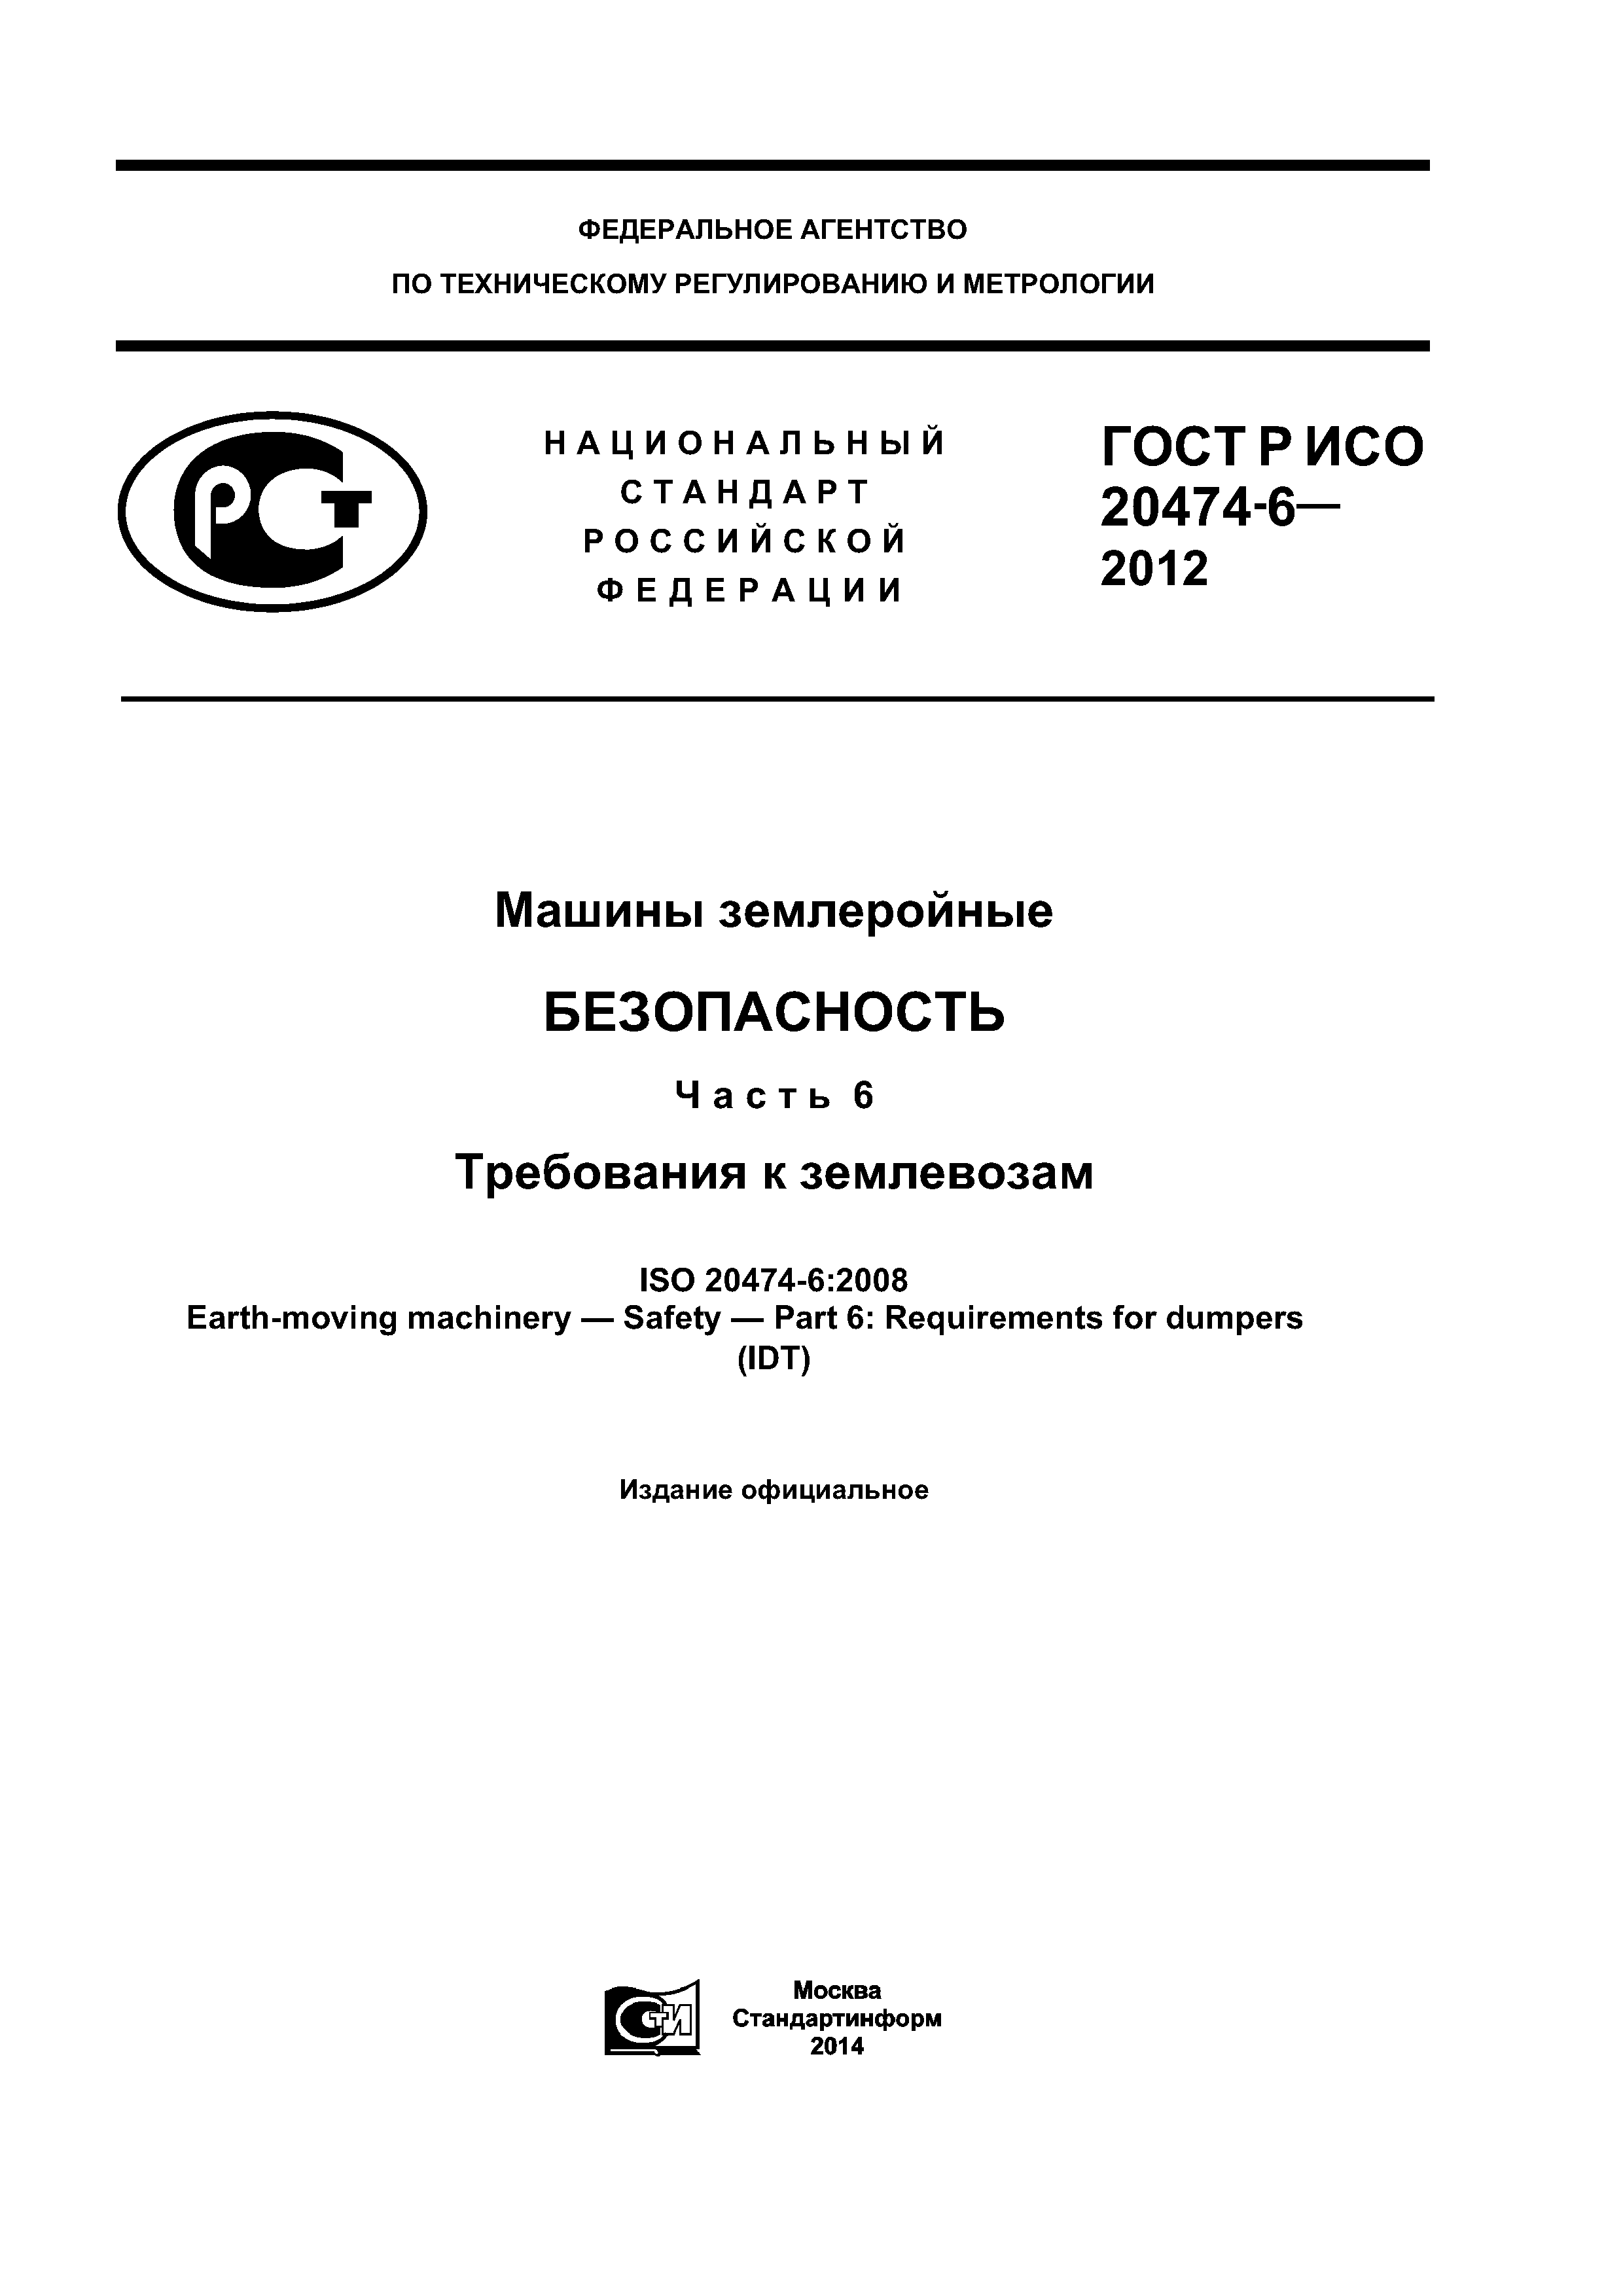 ГОСТ Р ИСО 20474-6-2012